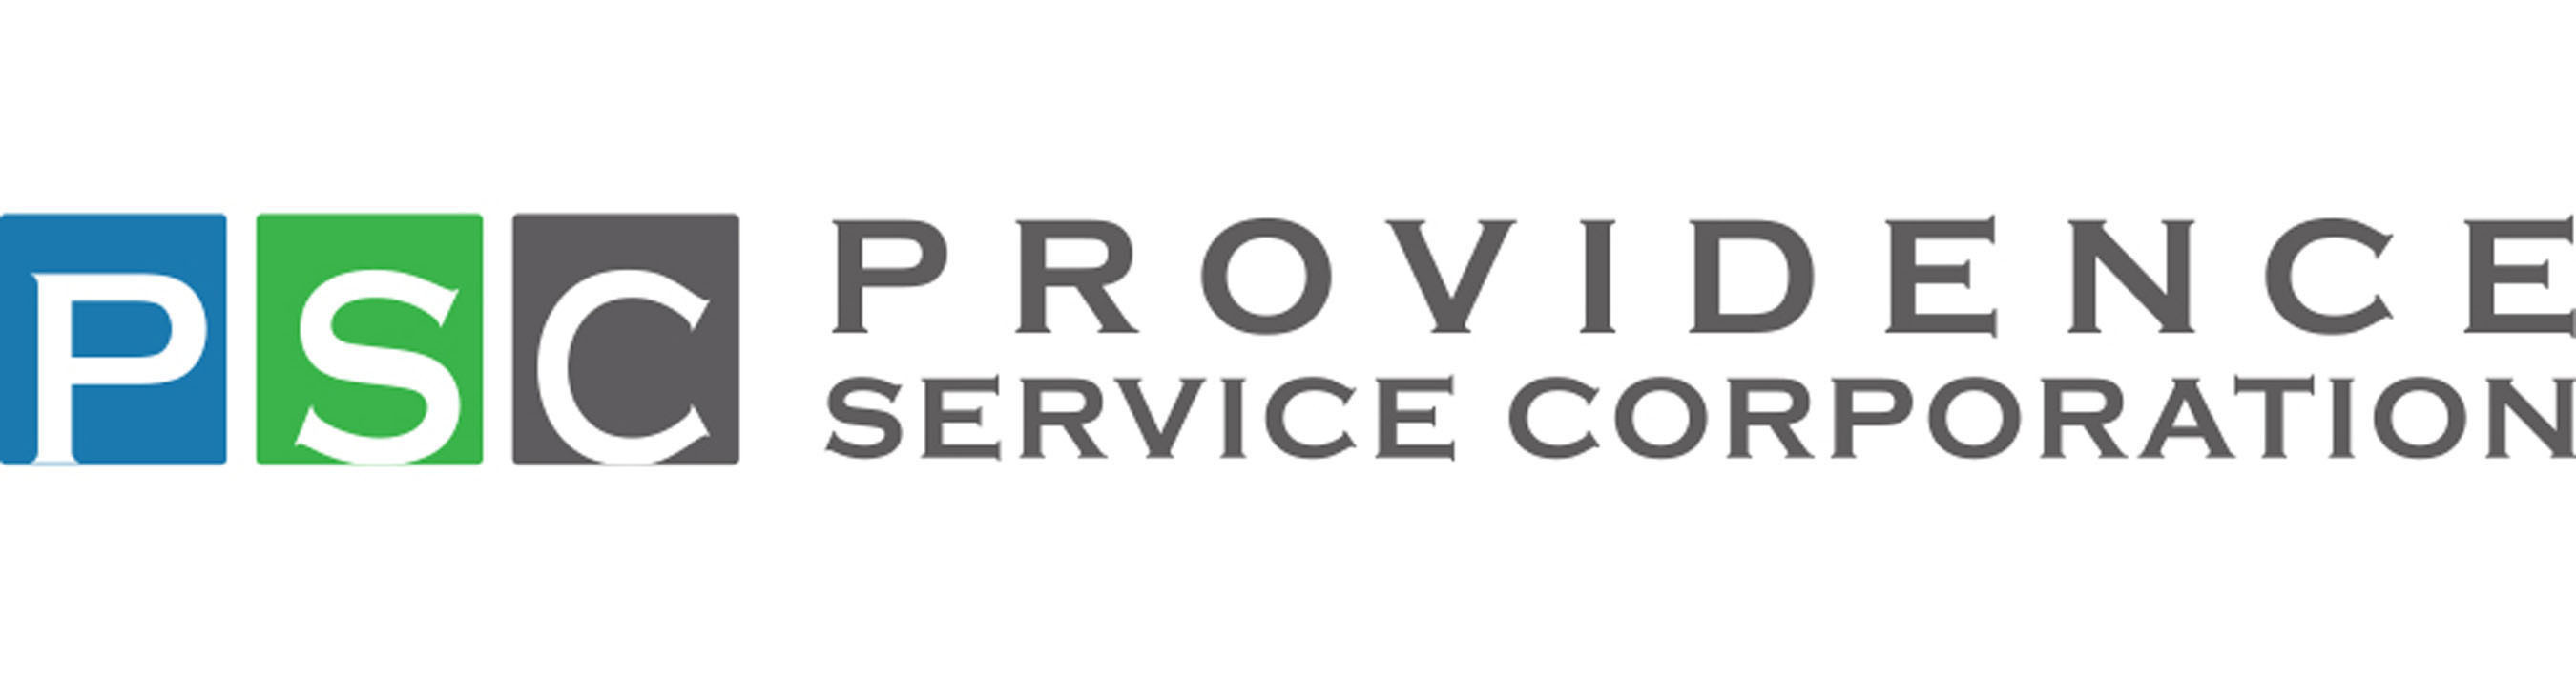 Providence Service Corporation logo.